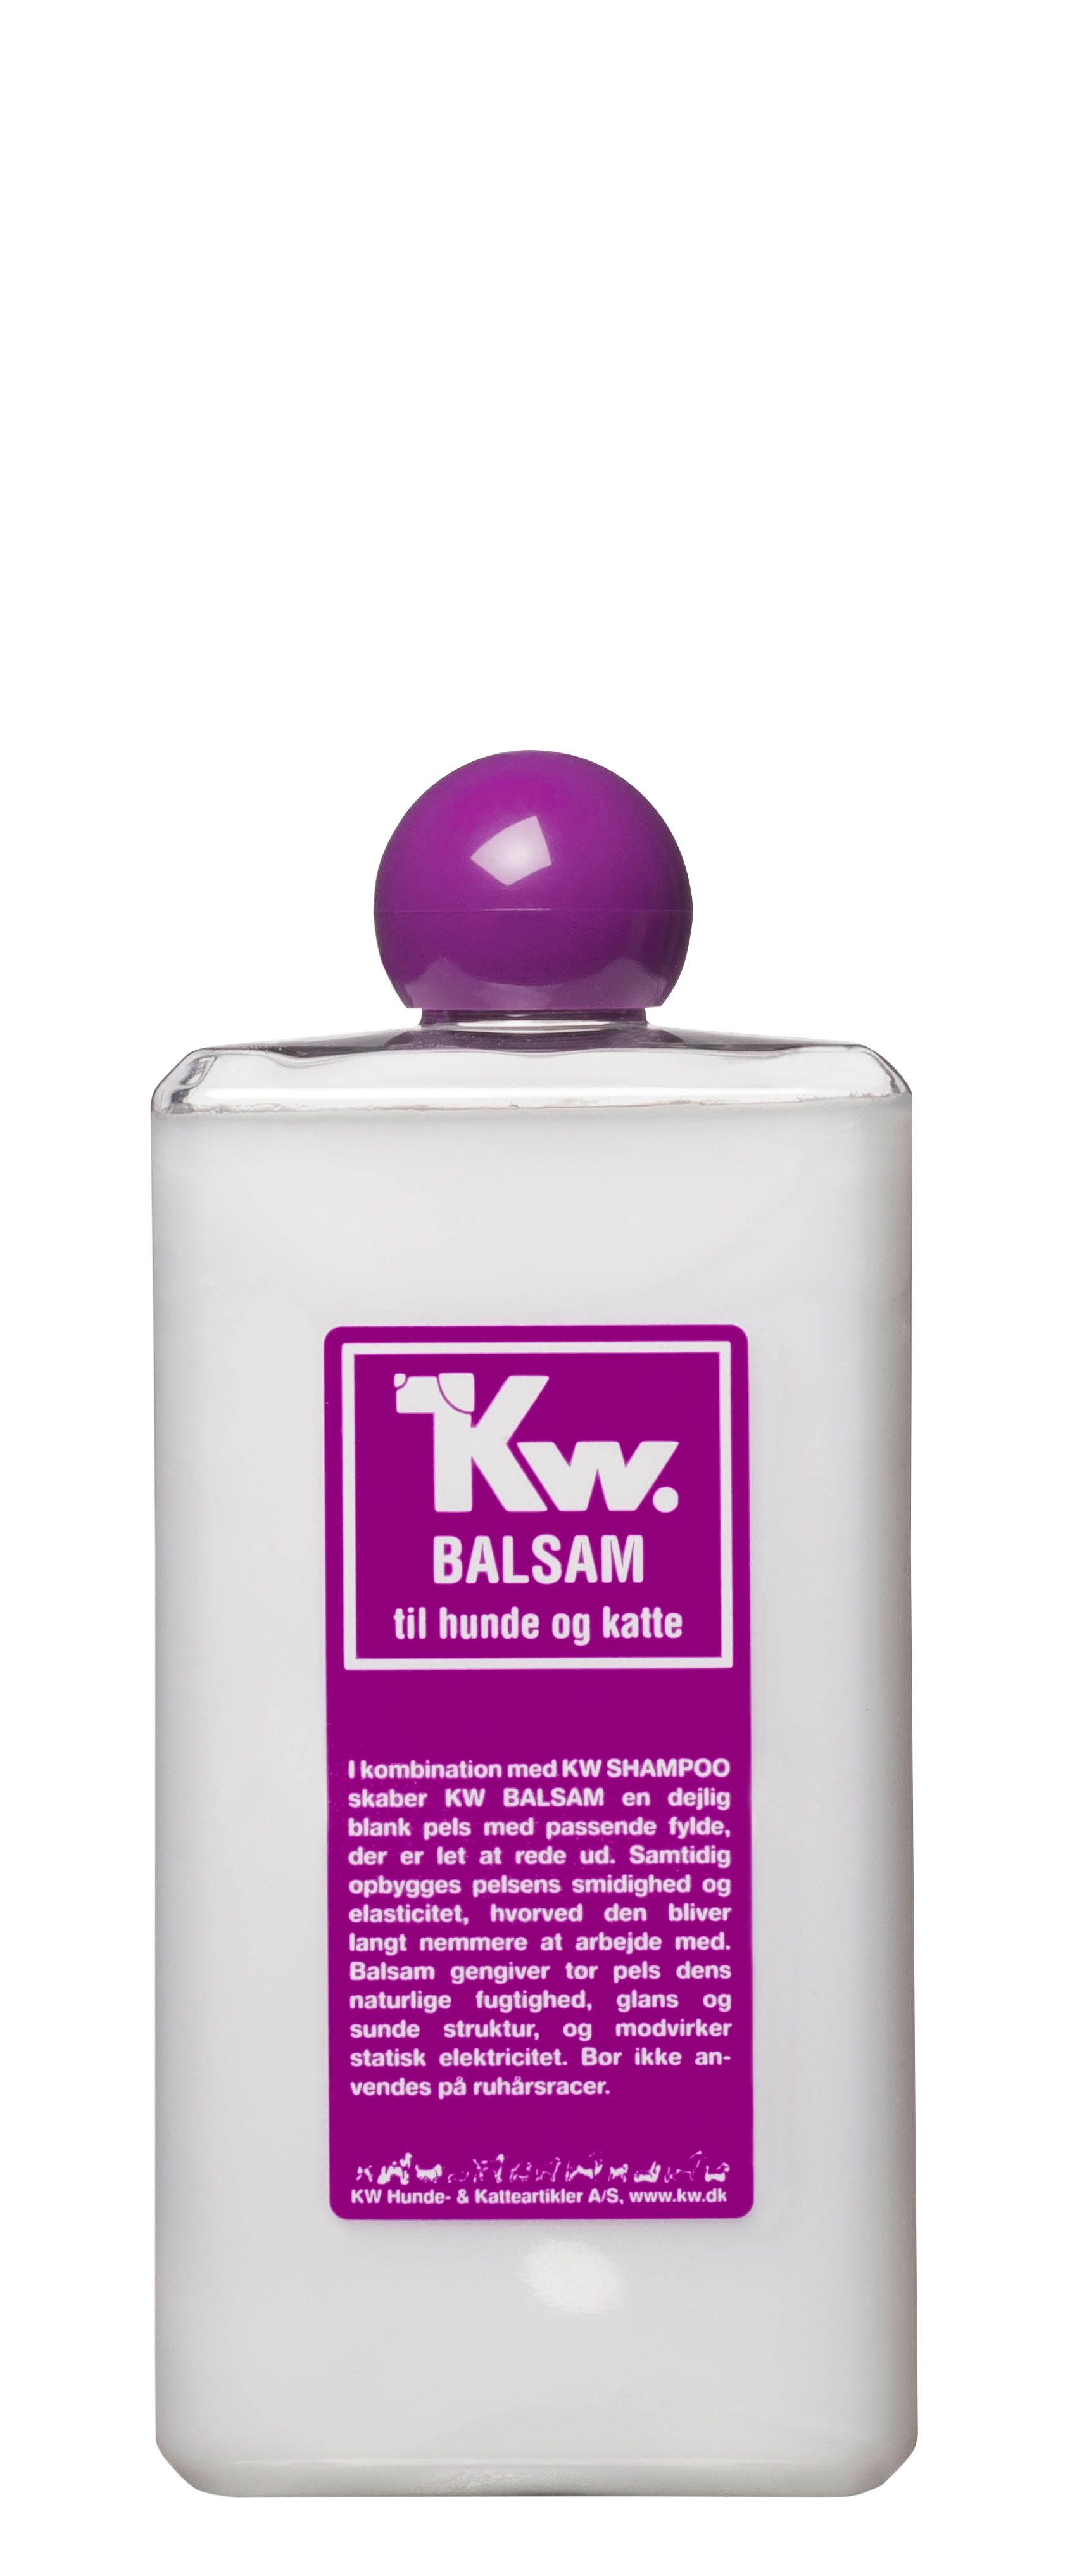 KW Balsam skaber en dejlig blank med der er let at rede ud.